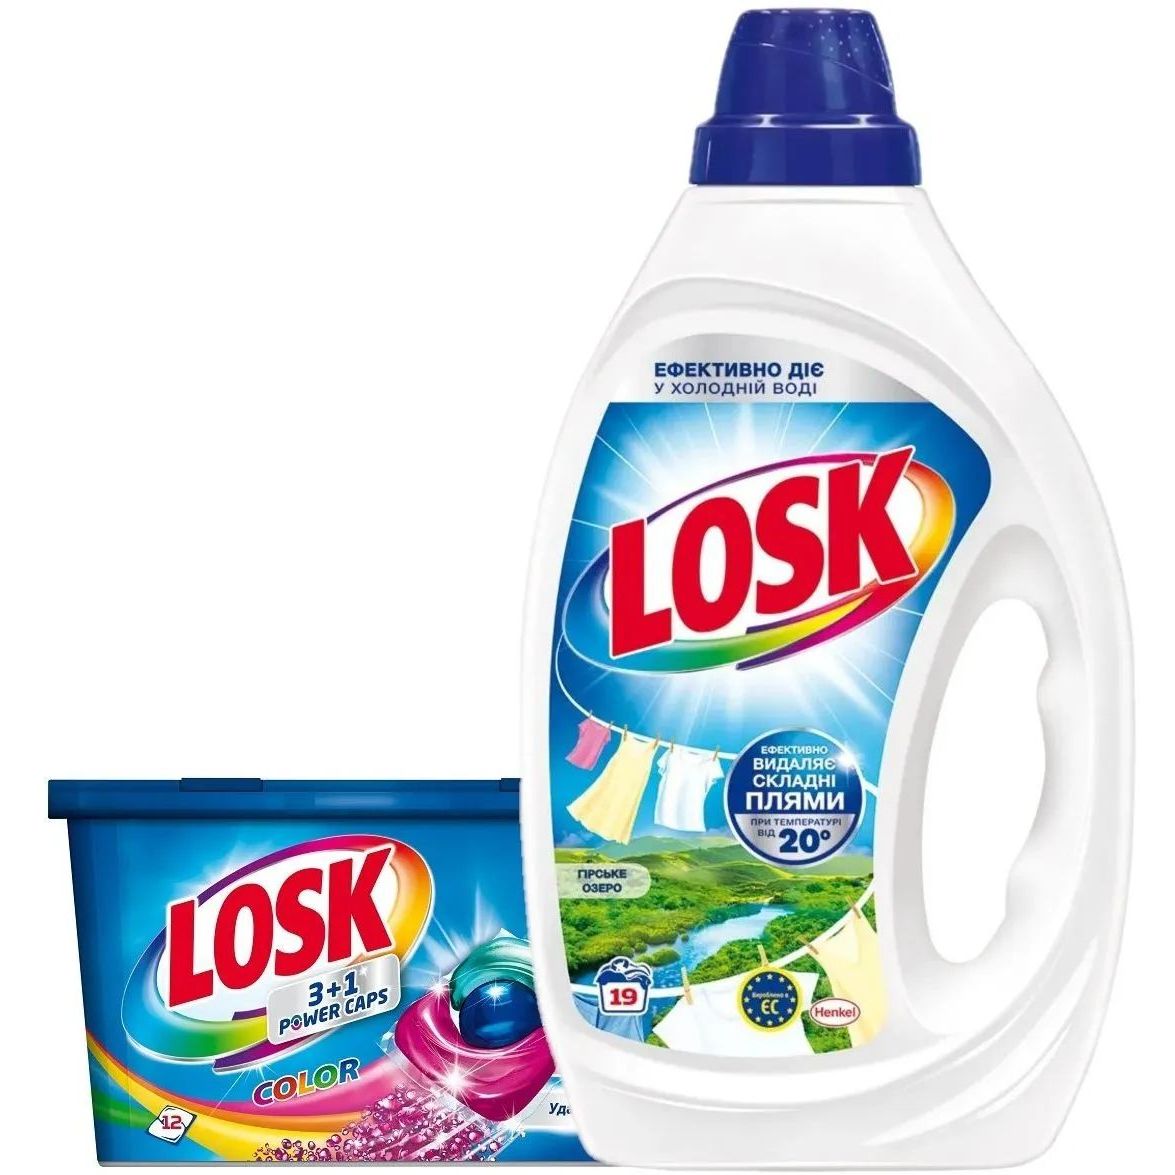 Набор Losk: Капсулы для стирки Losk Color 3в1, 12 шт. + Гель для стирки Losk для белых вещей Горное озеро, 855 мл - фото 1